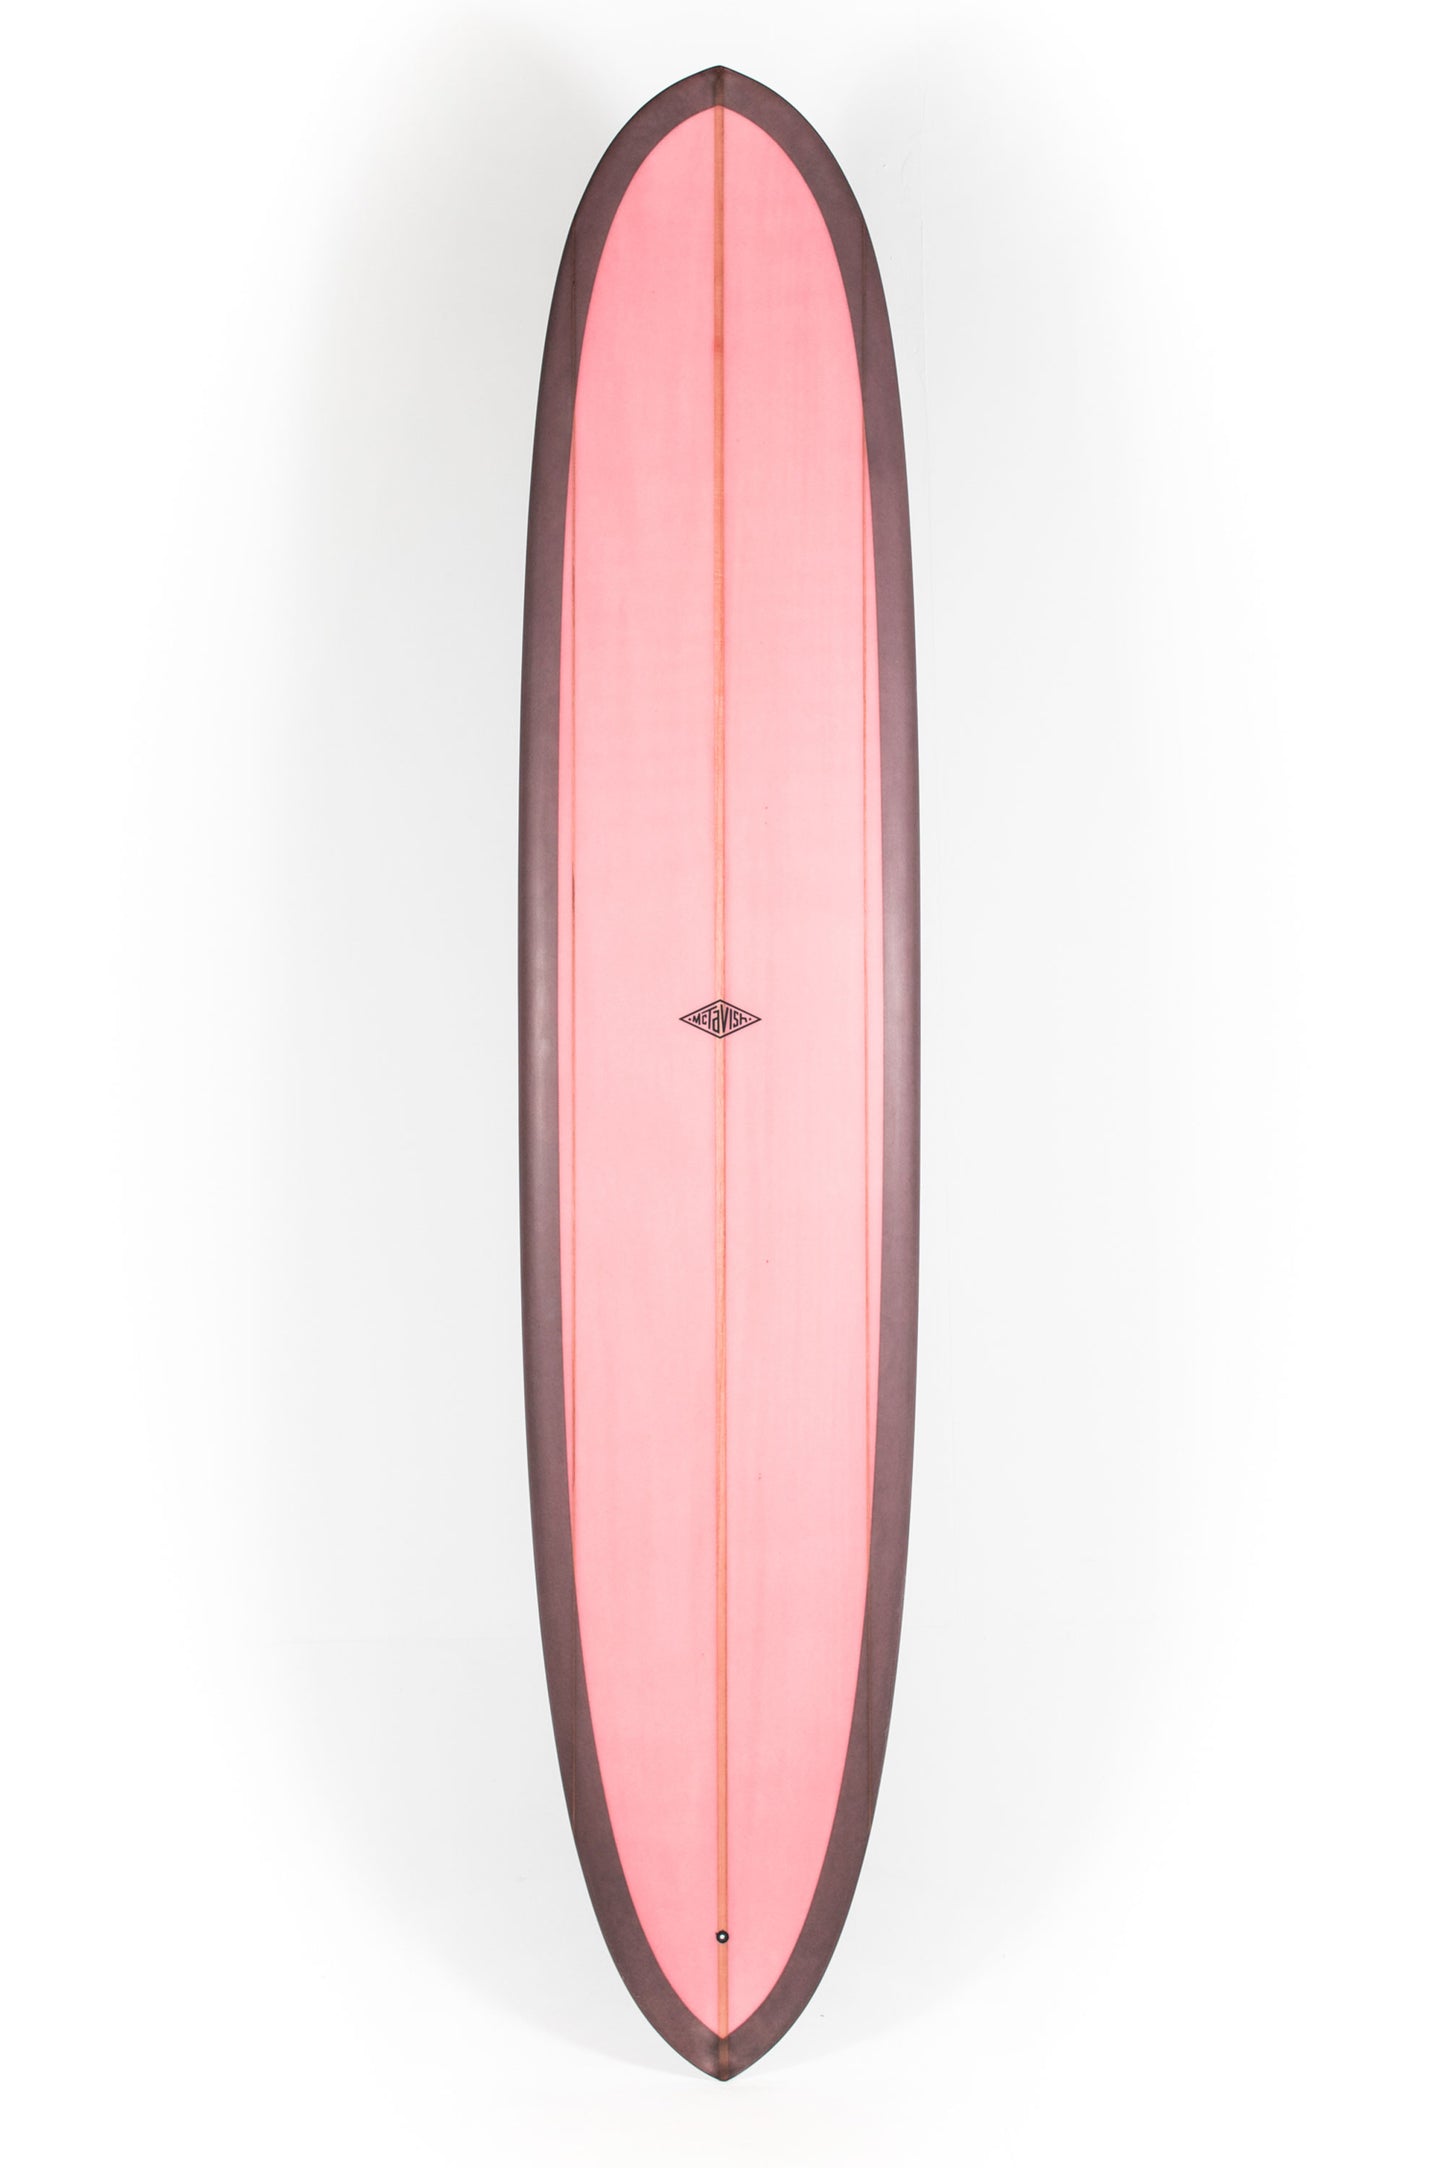 Pukas Surf Shop - McTavish Surfboard - PINNACLE by Bob McTavish - 9'6" x 23 x 3 - BM00781